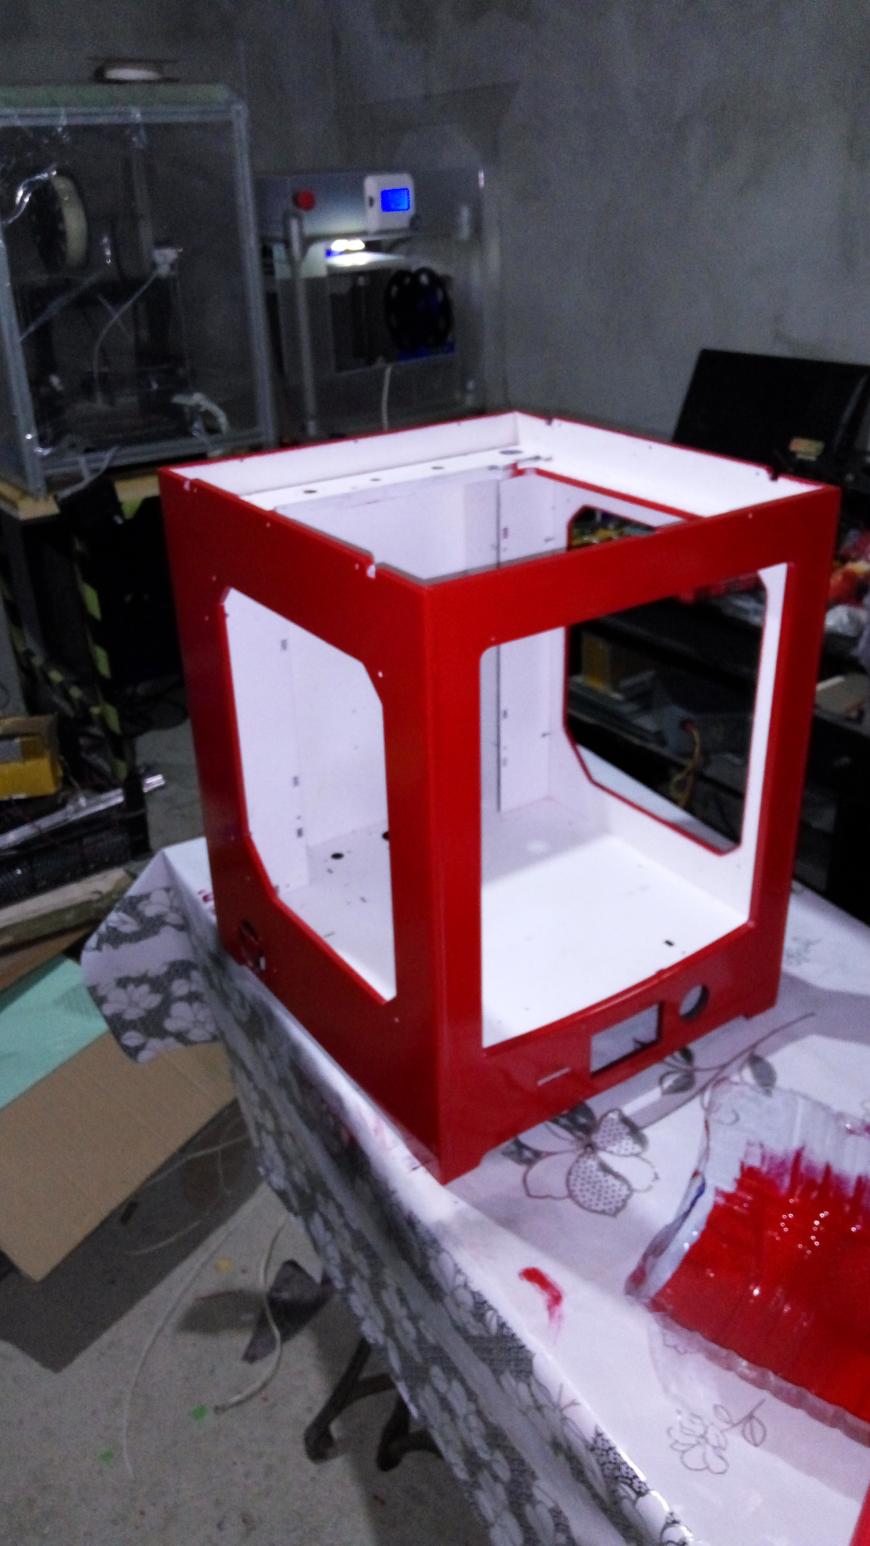 3D принтеростроение - хобби или диагноз